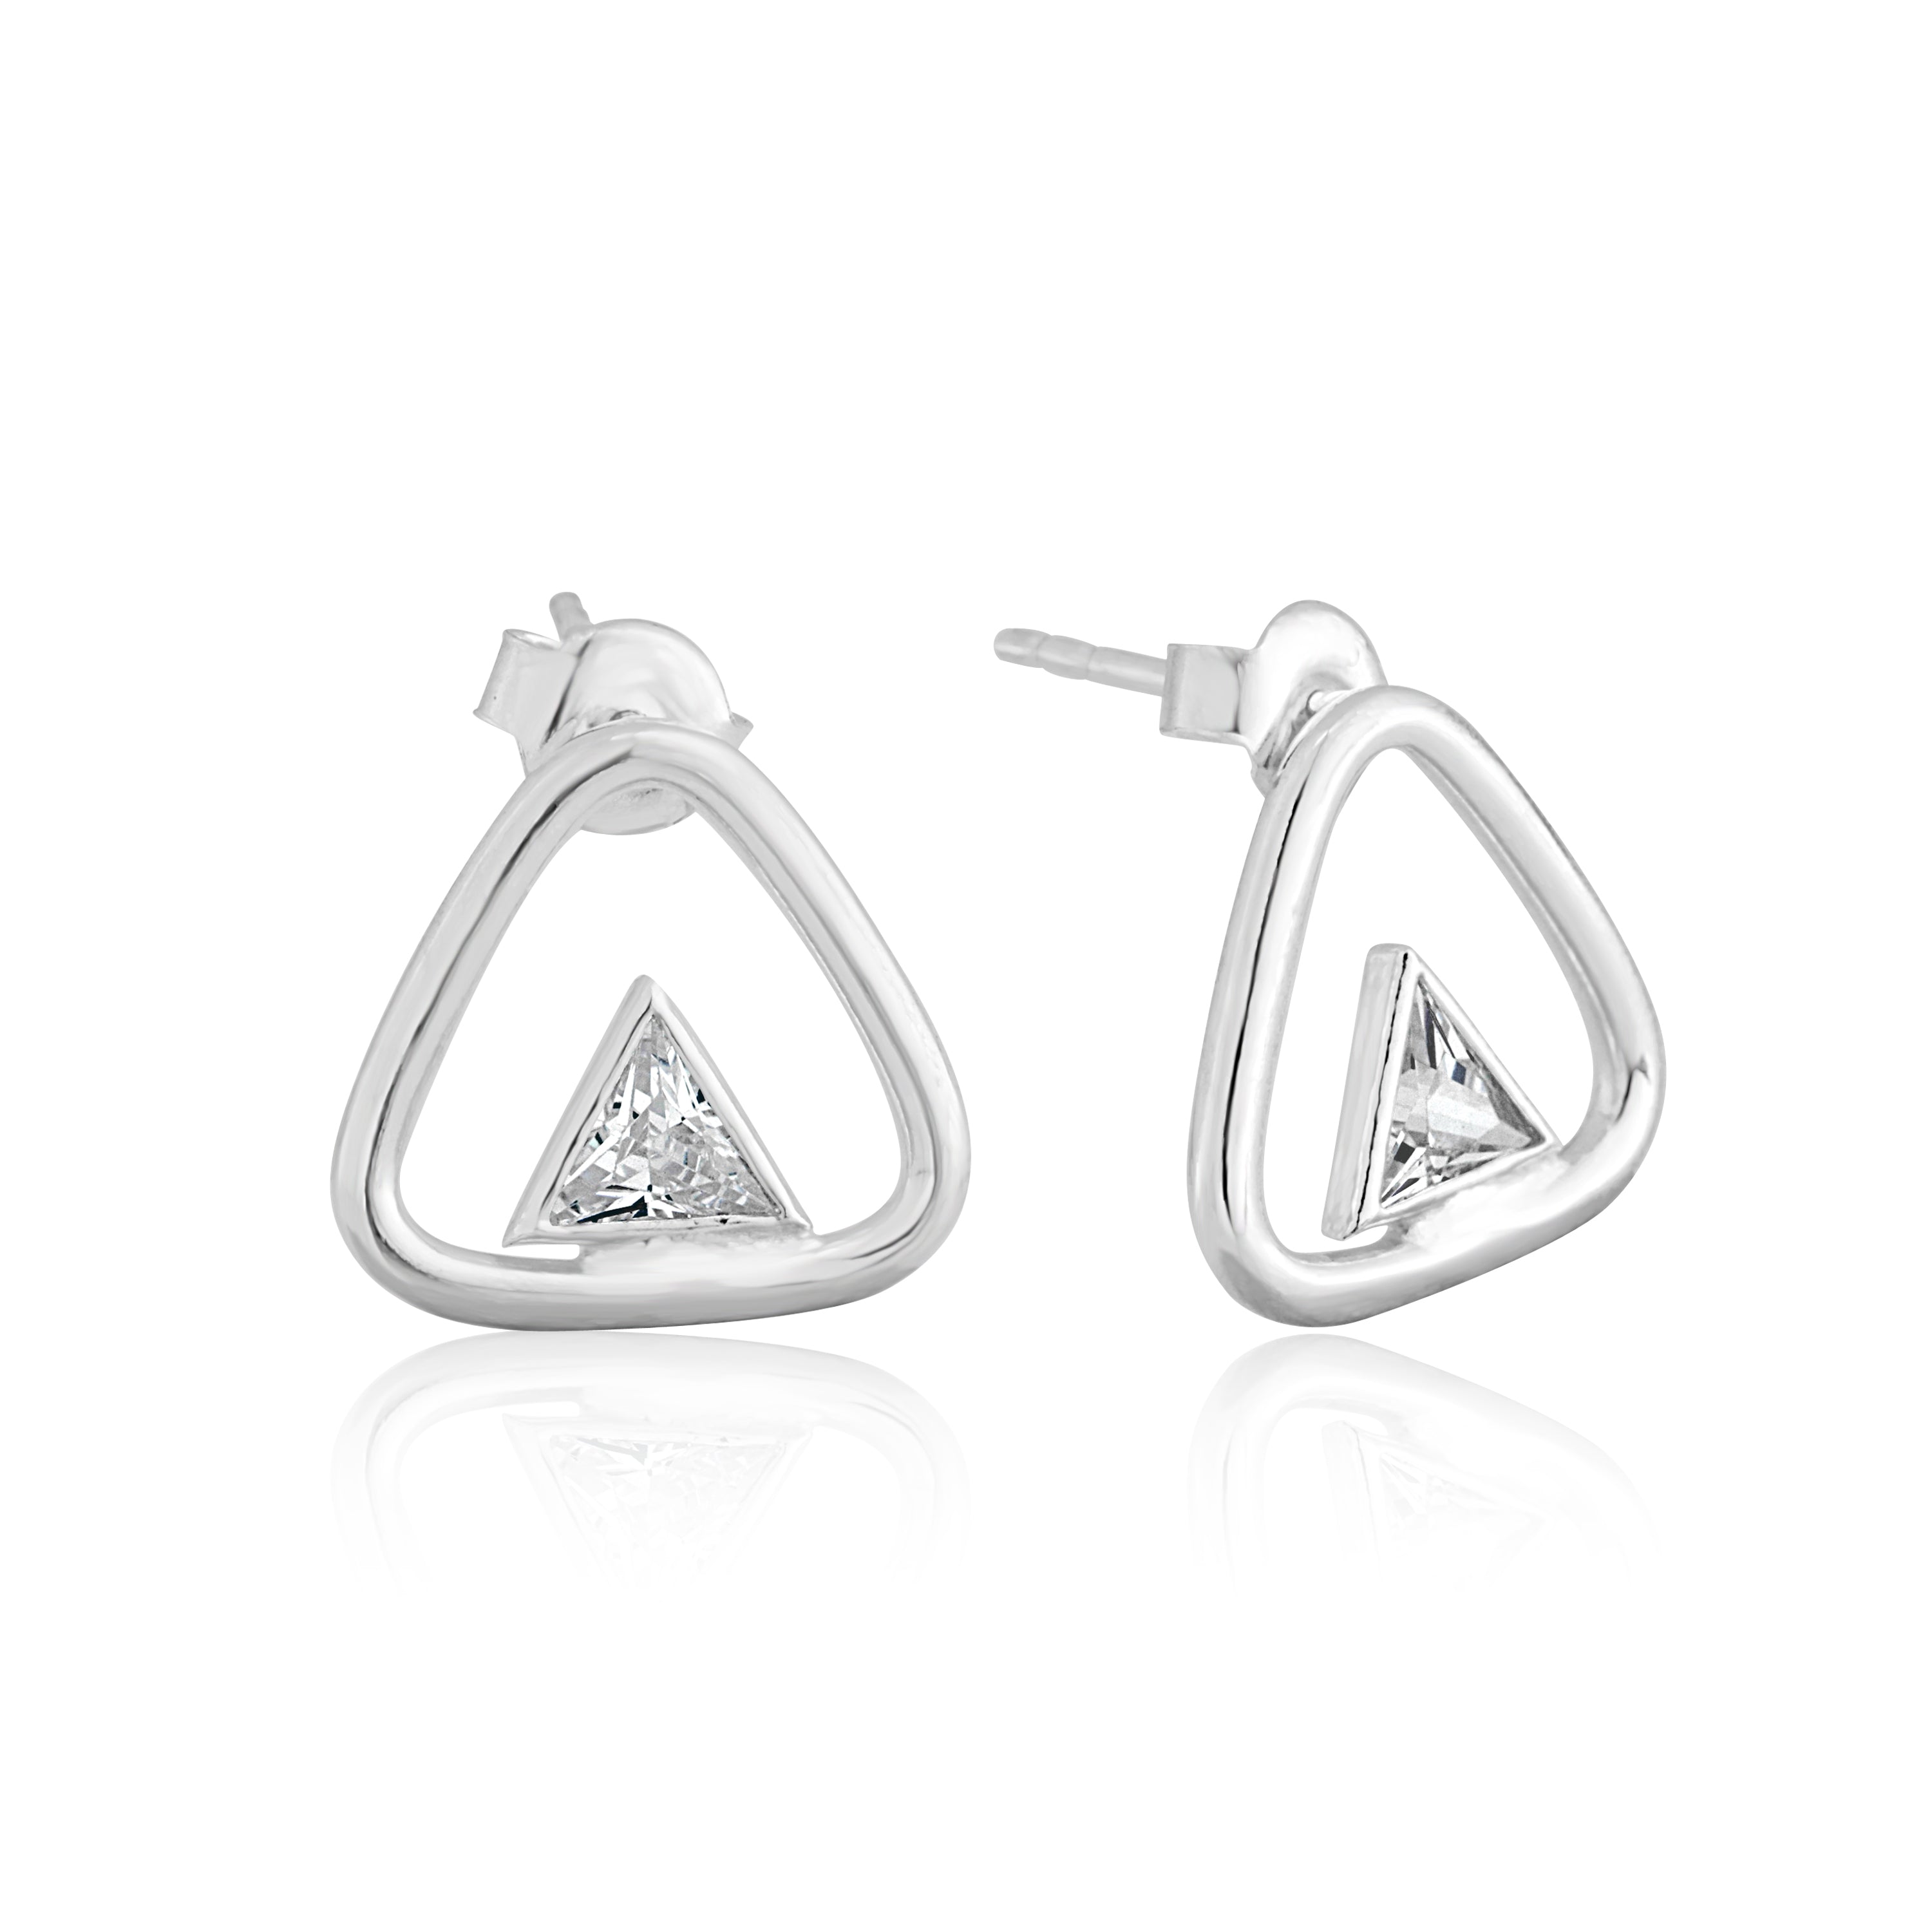 Love Triangle Silver Earrings